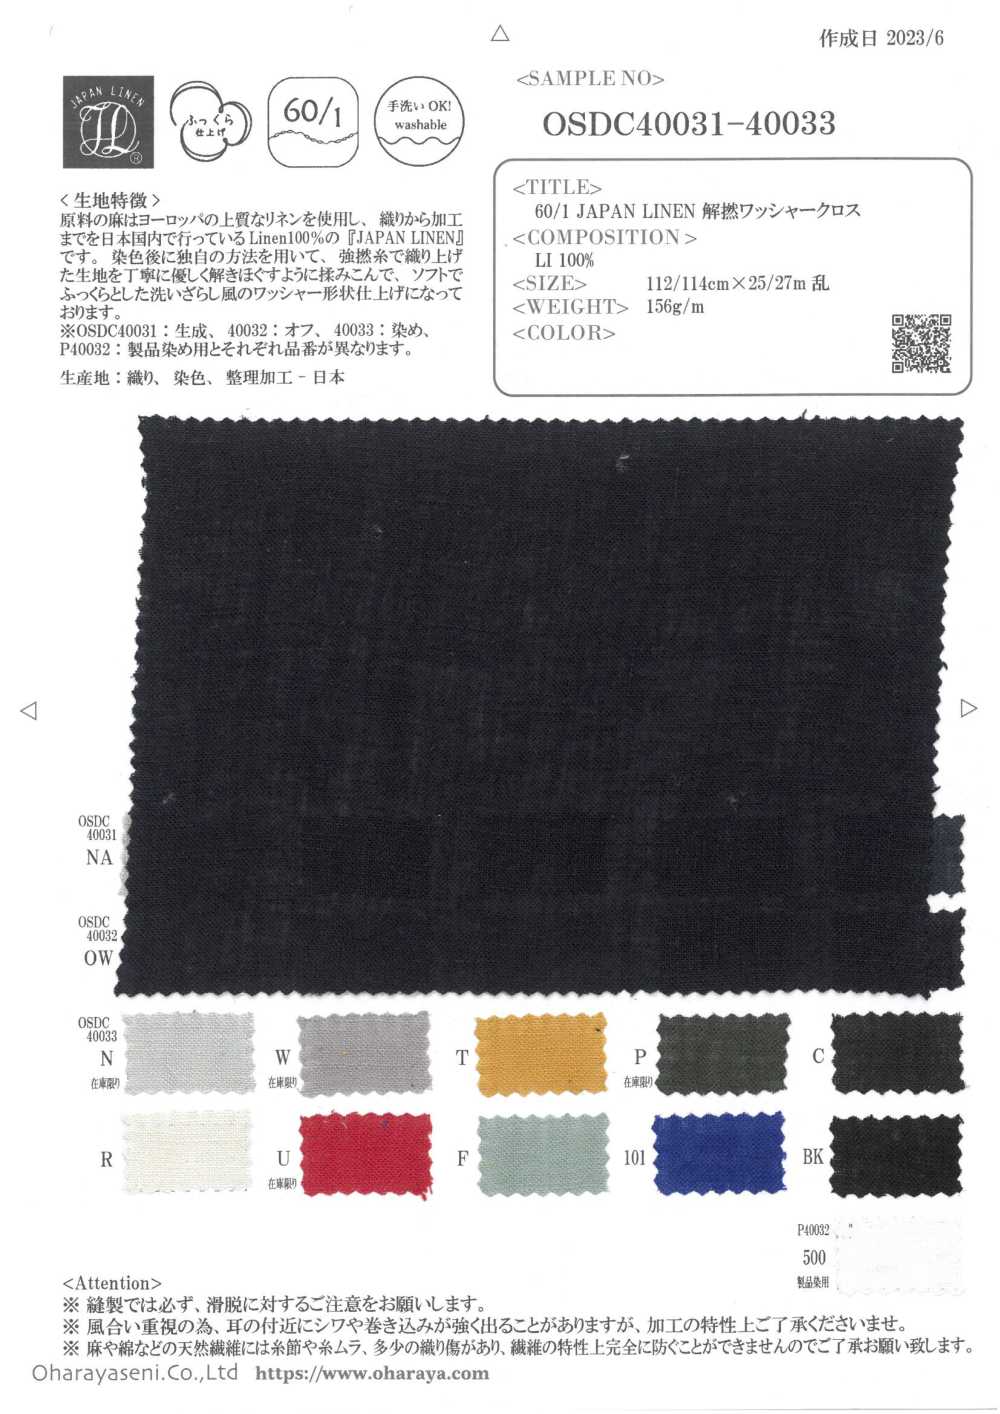 OSDC40033 60/1 JAPAN LINEN 解撚ワッシャークロス (染)[生地] 小原屋繊維